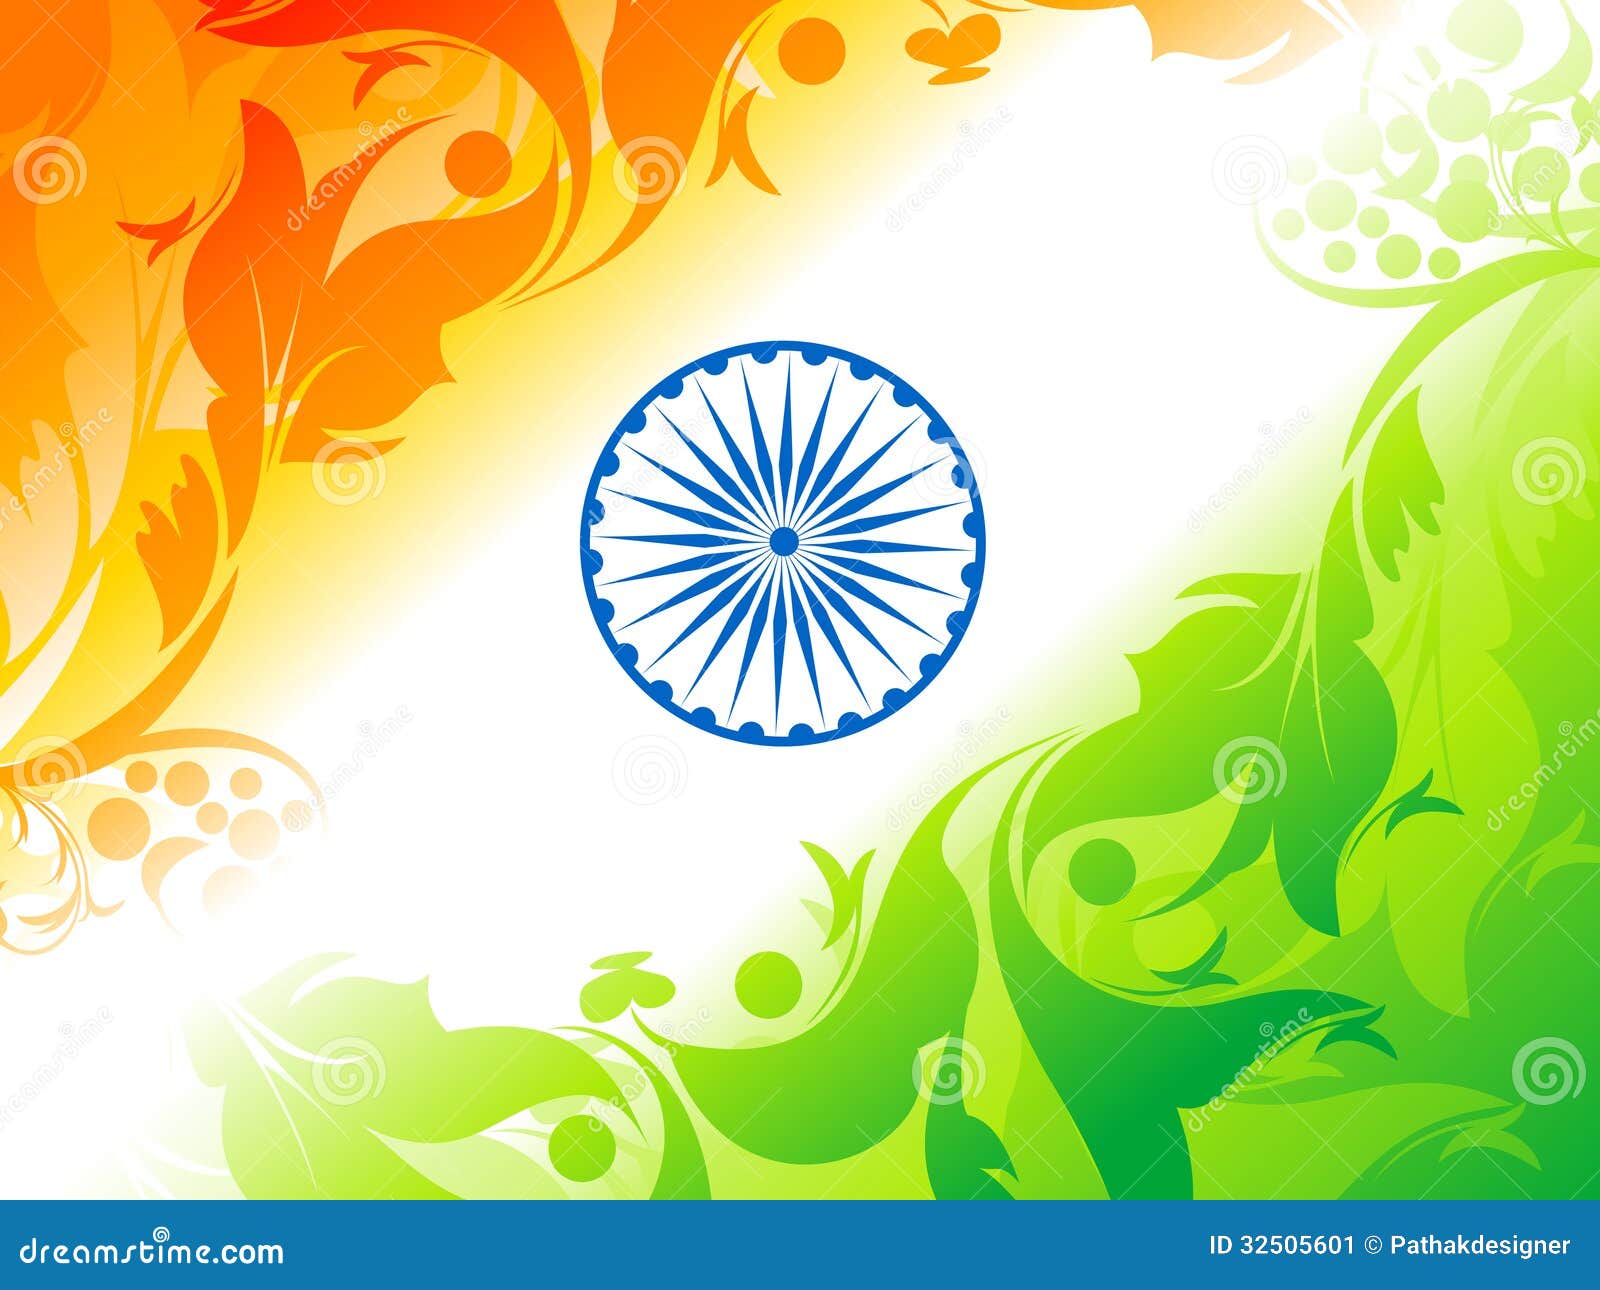 Indian Flag Background Stock Illustrations – 26,768 Indian Flag Background  Stock Illustrations, Vectors & Clipart - Dreamstime